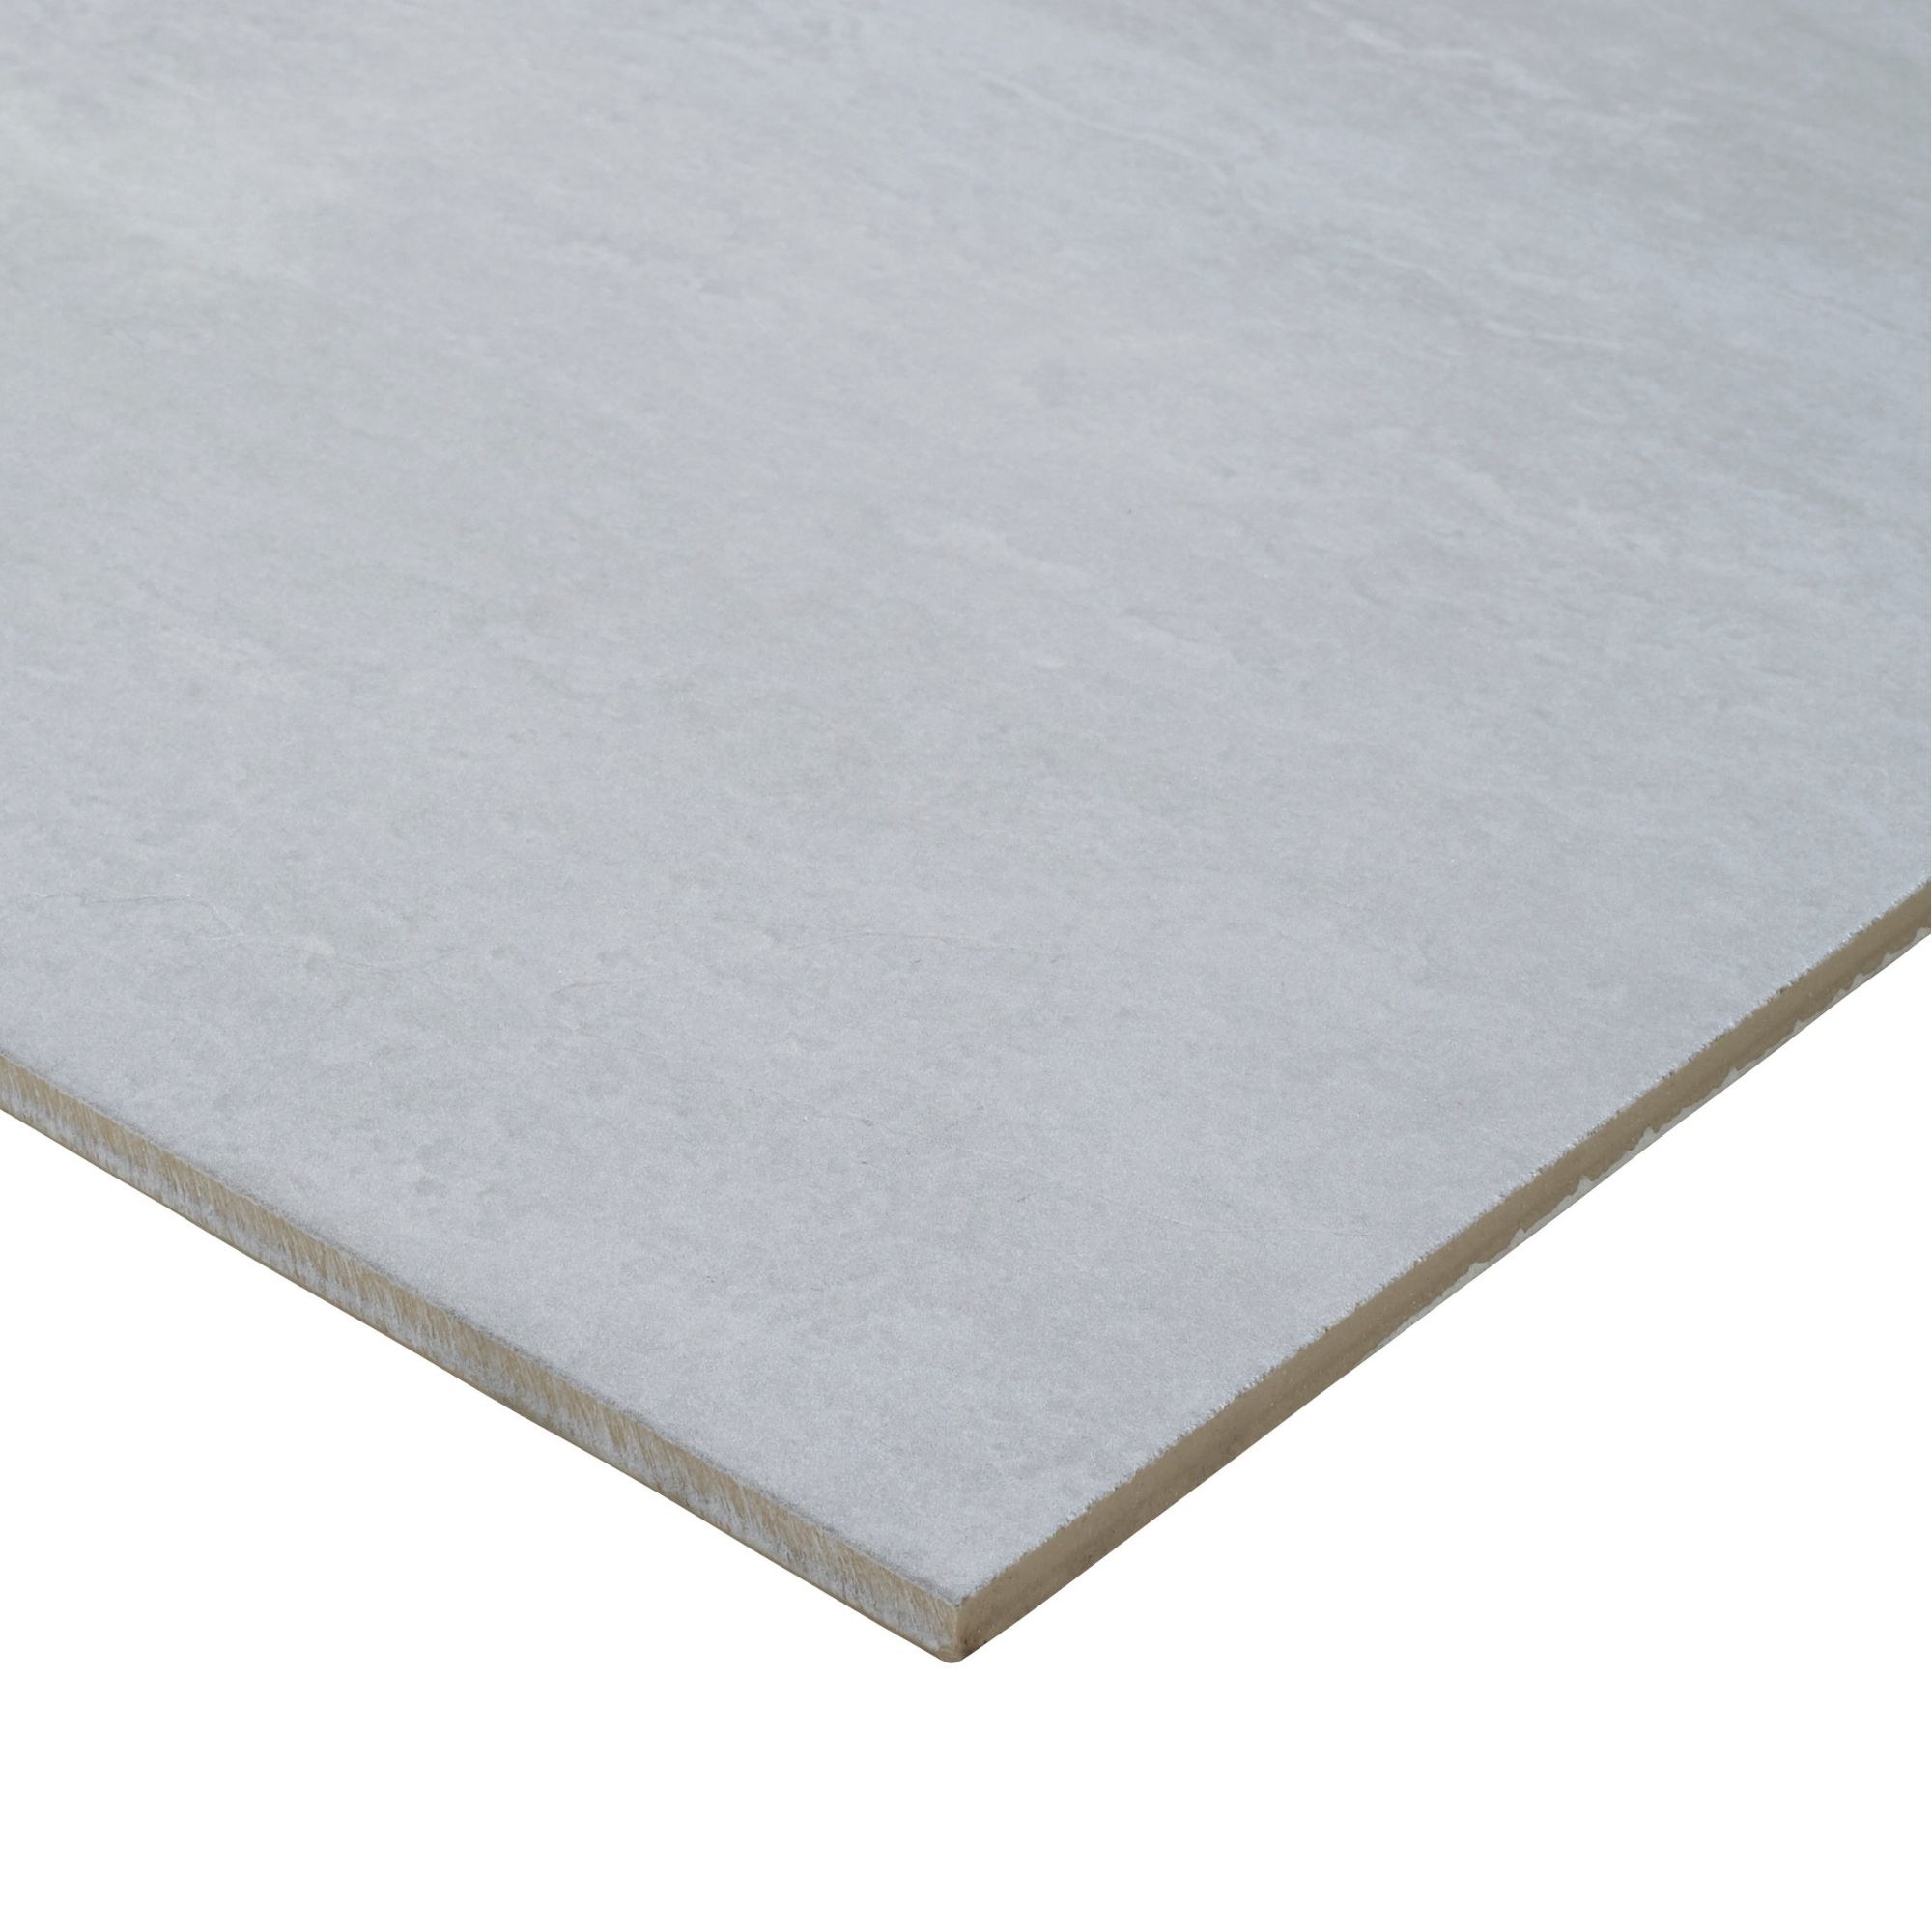 Colours Soft travertine Grey Matt Stone effect Porcelain Wall & floor Tile Sample